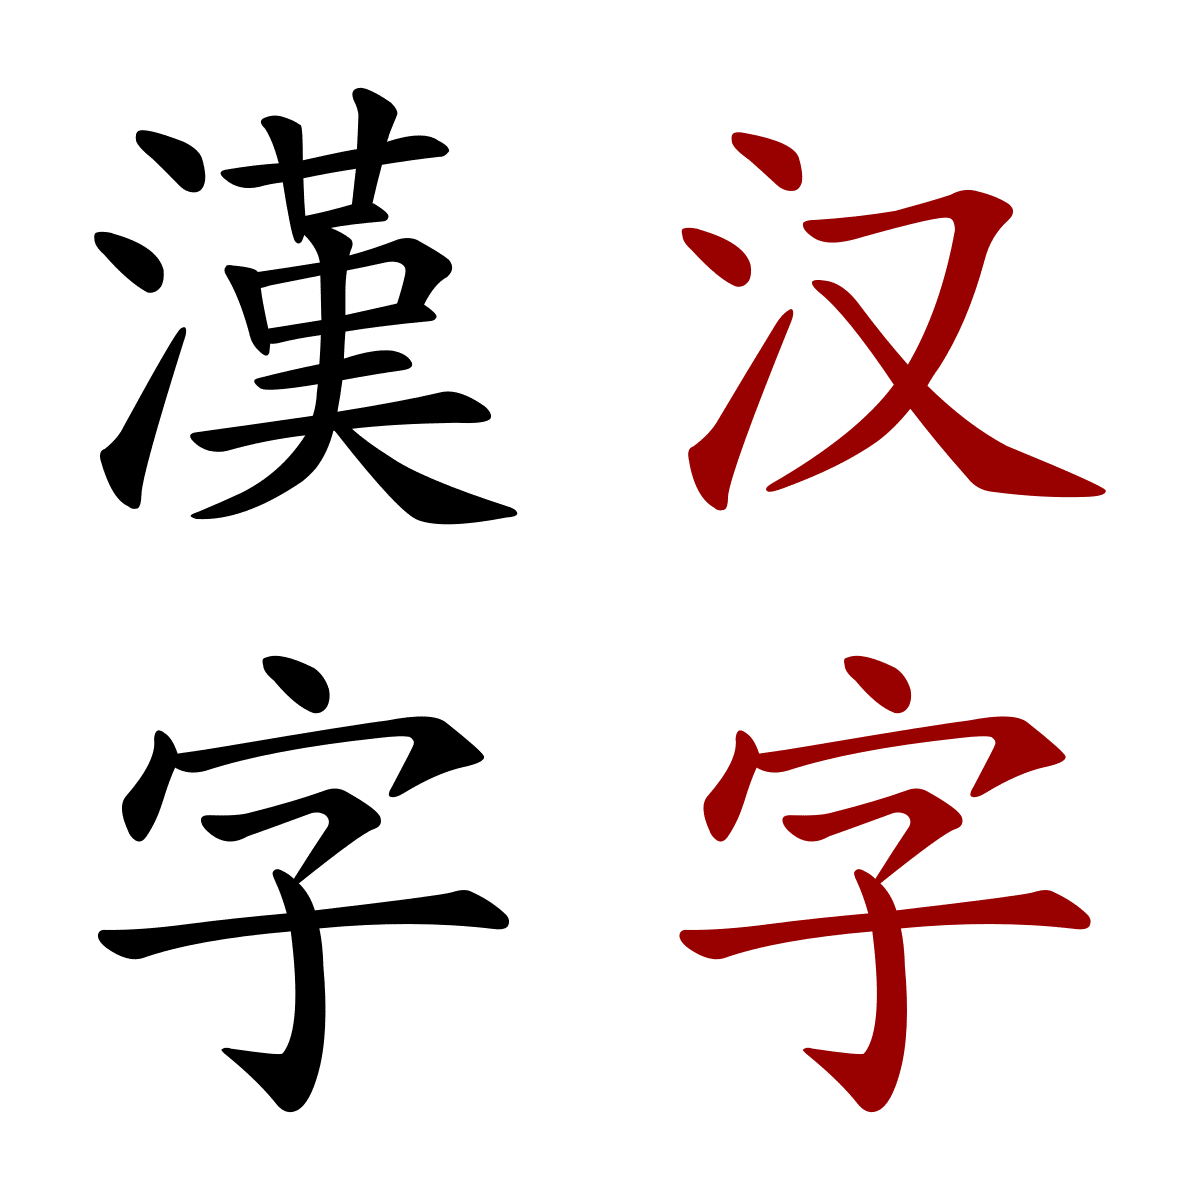 simbolos-chinos